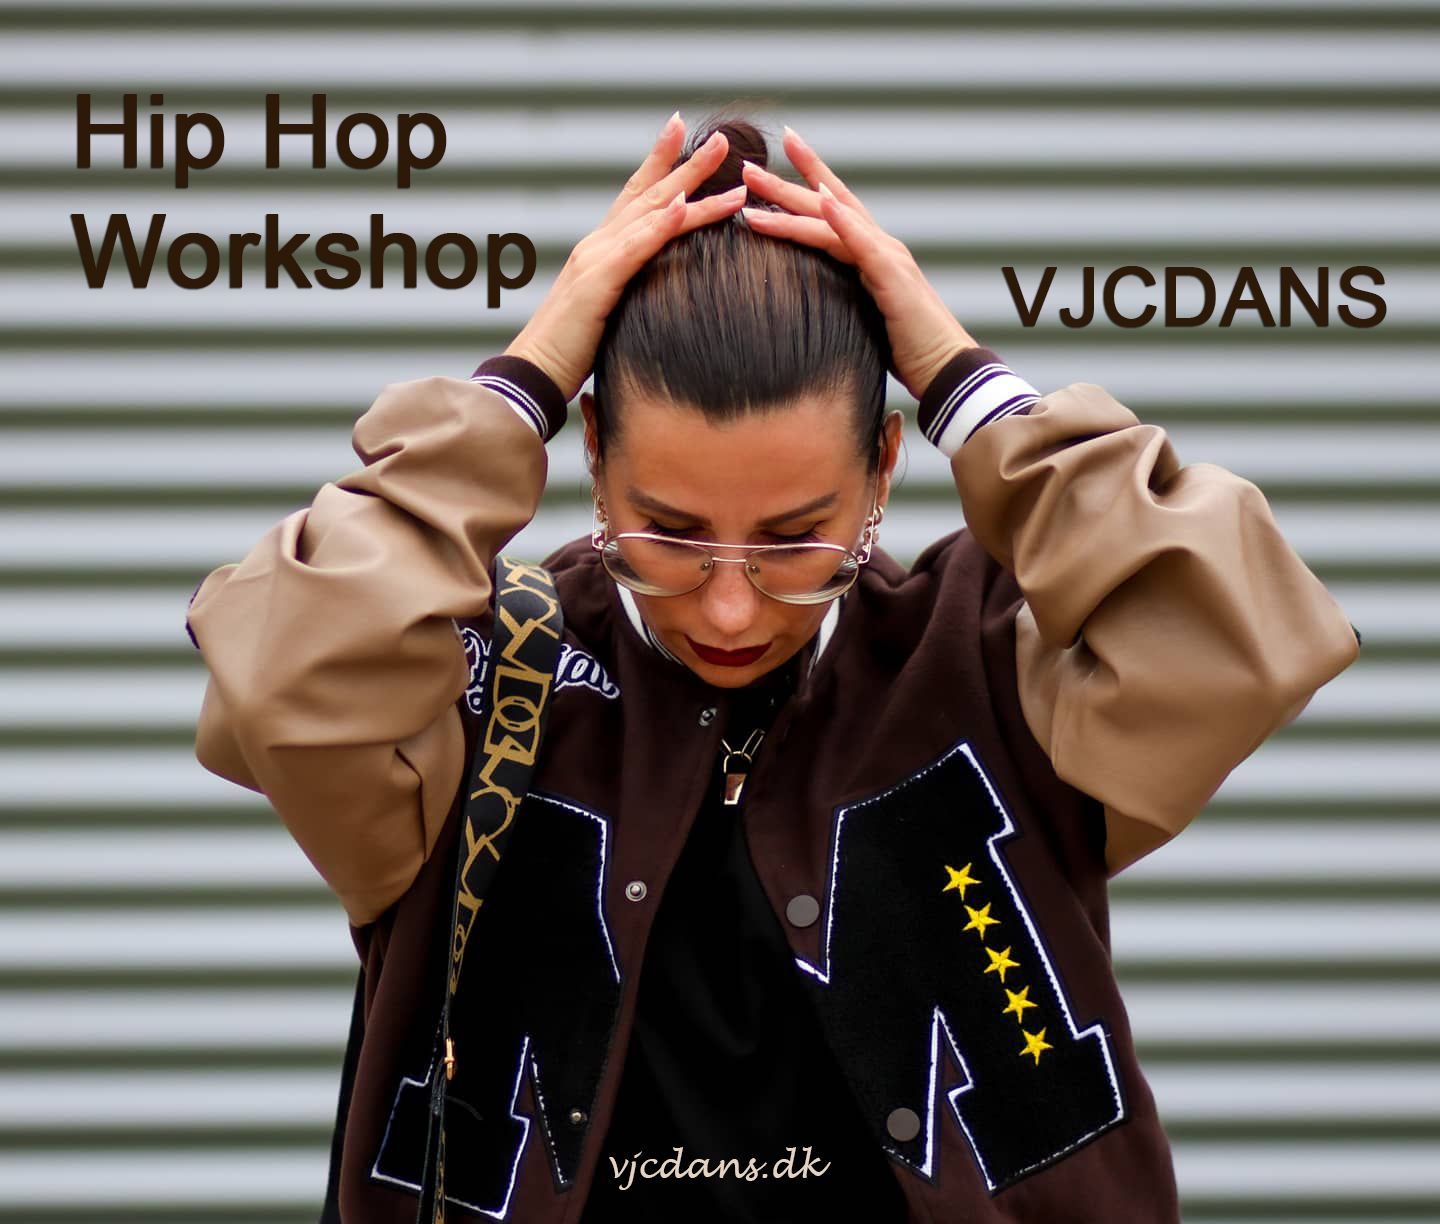 Hip Hop Workshop - VJCDANS, Hillerød, Nordsjælland